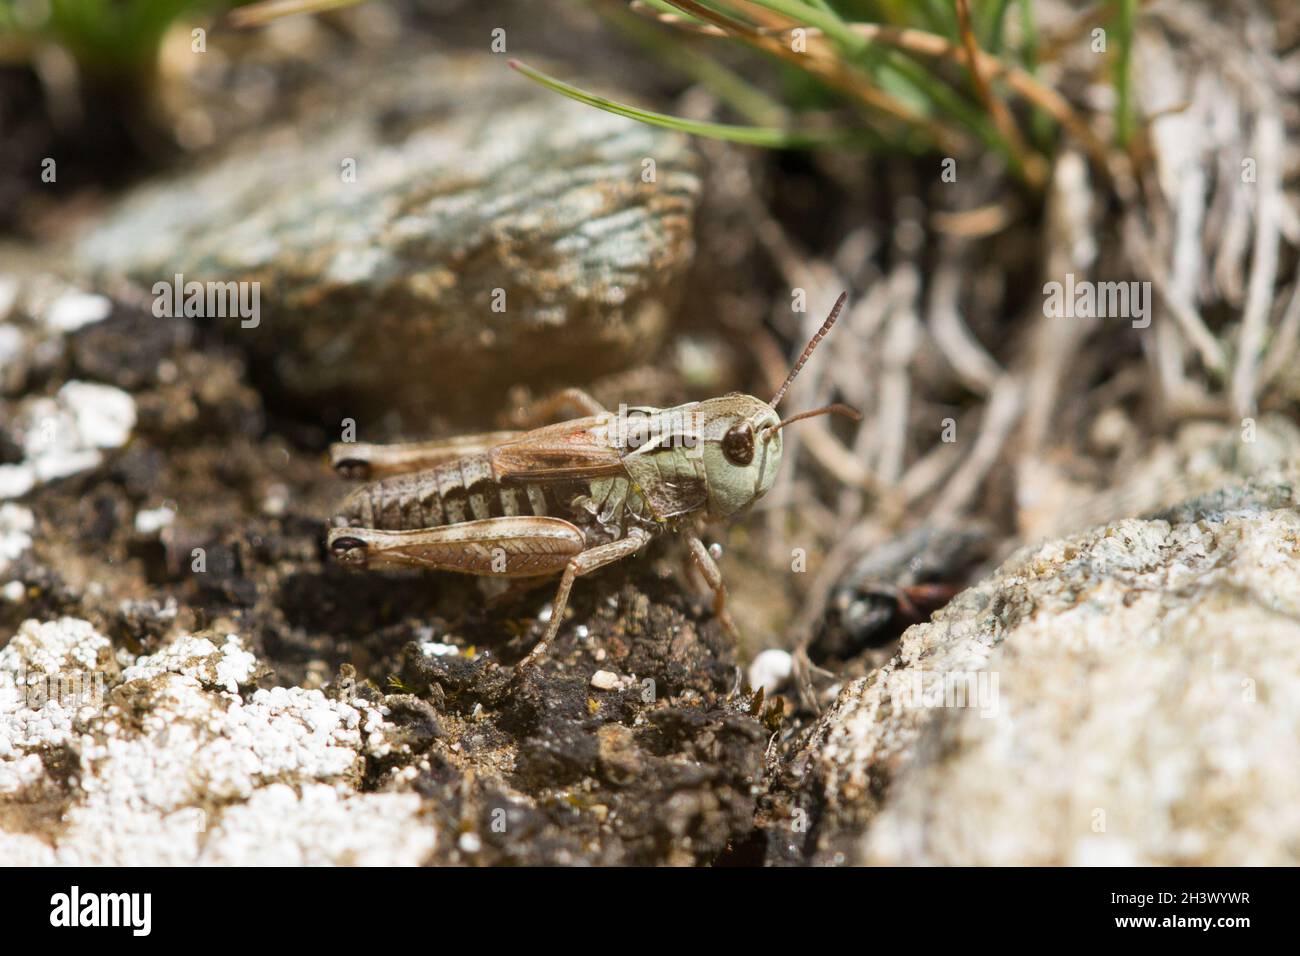 Le Grasshopper denté d'Ursula (Stenobothrus ursulae), un homme.Endémisme des Alpes NW-italiennes.Parc naturel du Mont Avic, Aoste, Italie. Banque D'Images